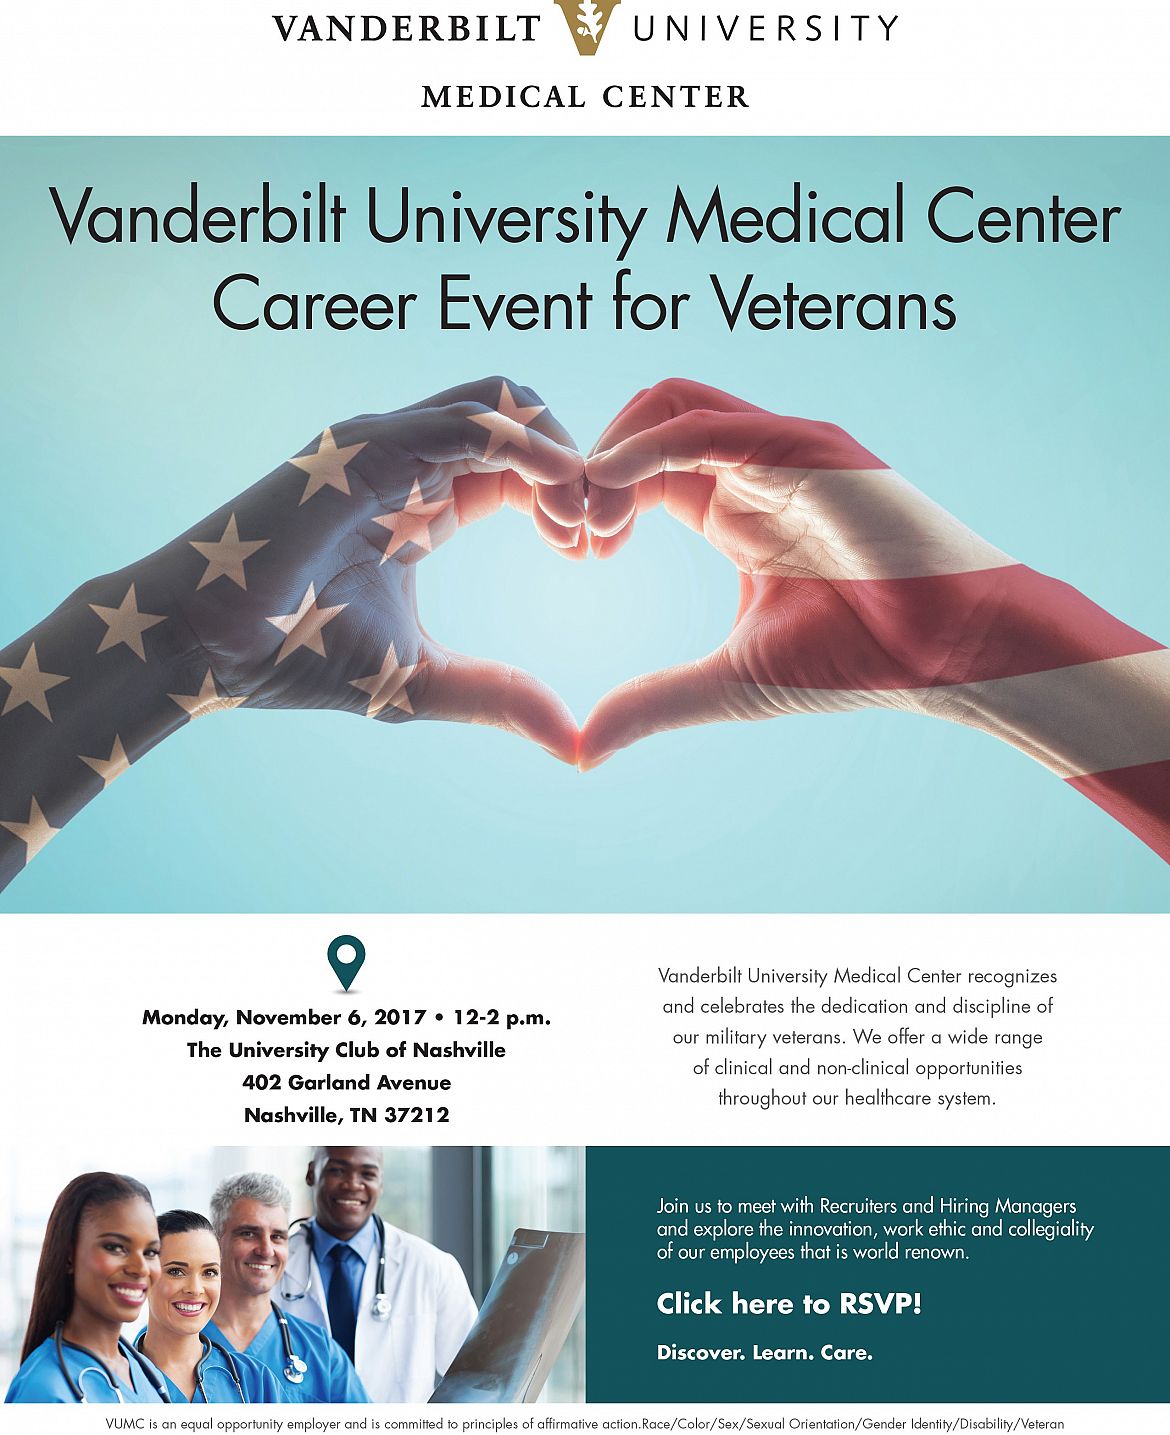 Vanderbilt University Medical Center Career Event for Veterans